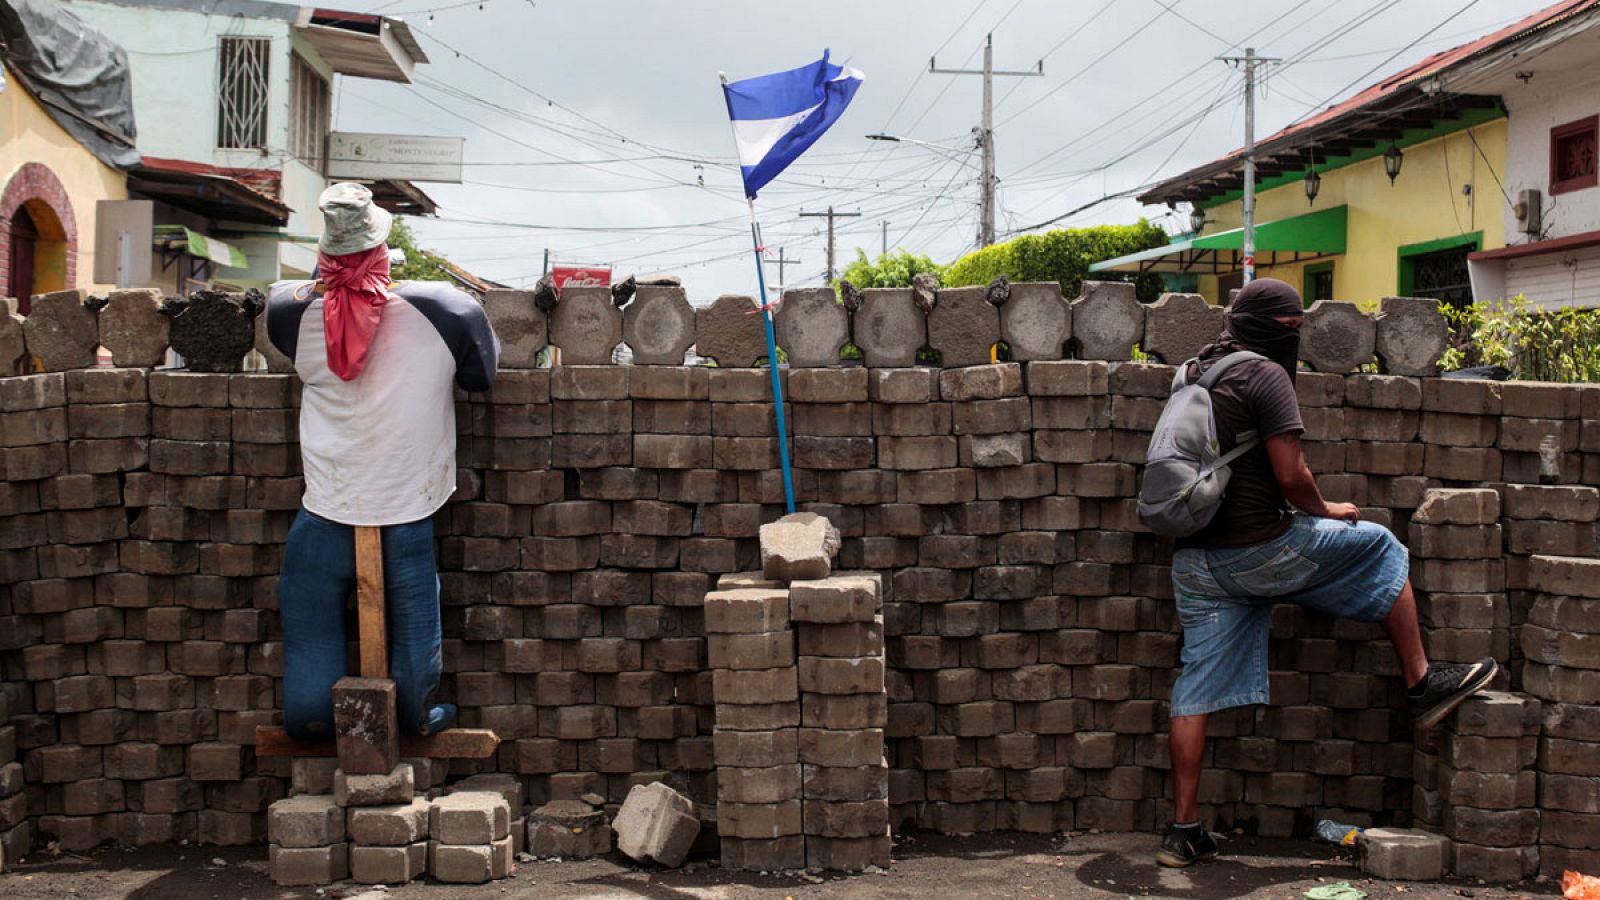 Imagen de unos manifestantes tras una barricada en Masaya, Nicaragua.